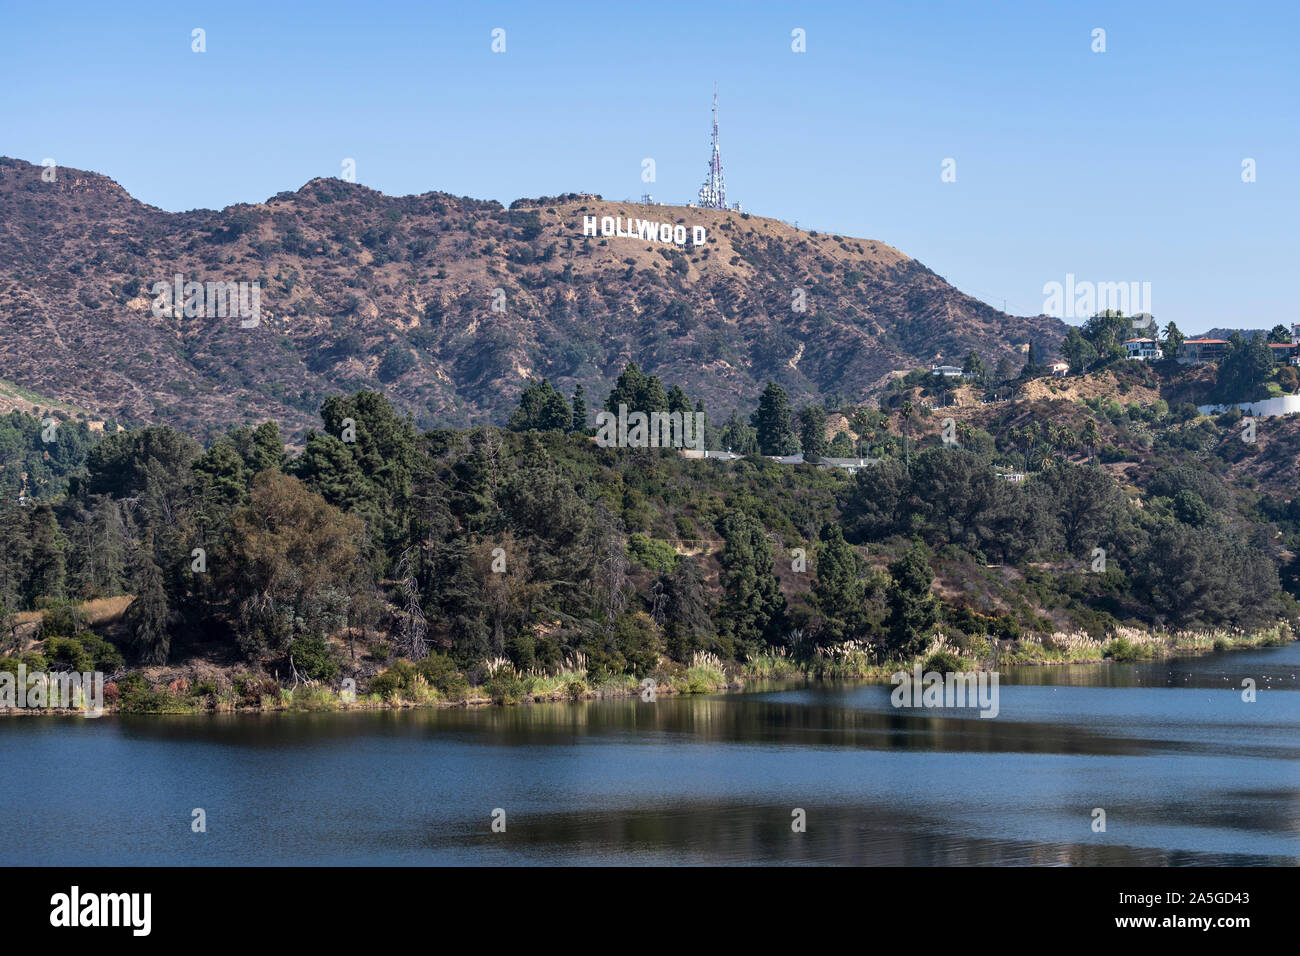 Los Angeles, Kalifornien, USA - Oktober 13, 2019: Blick auf den berühmten Hollywood Zeichen und Stausee in der Nähe von Griffith Park. Stockfoto